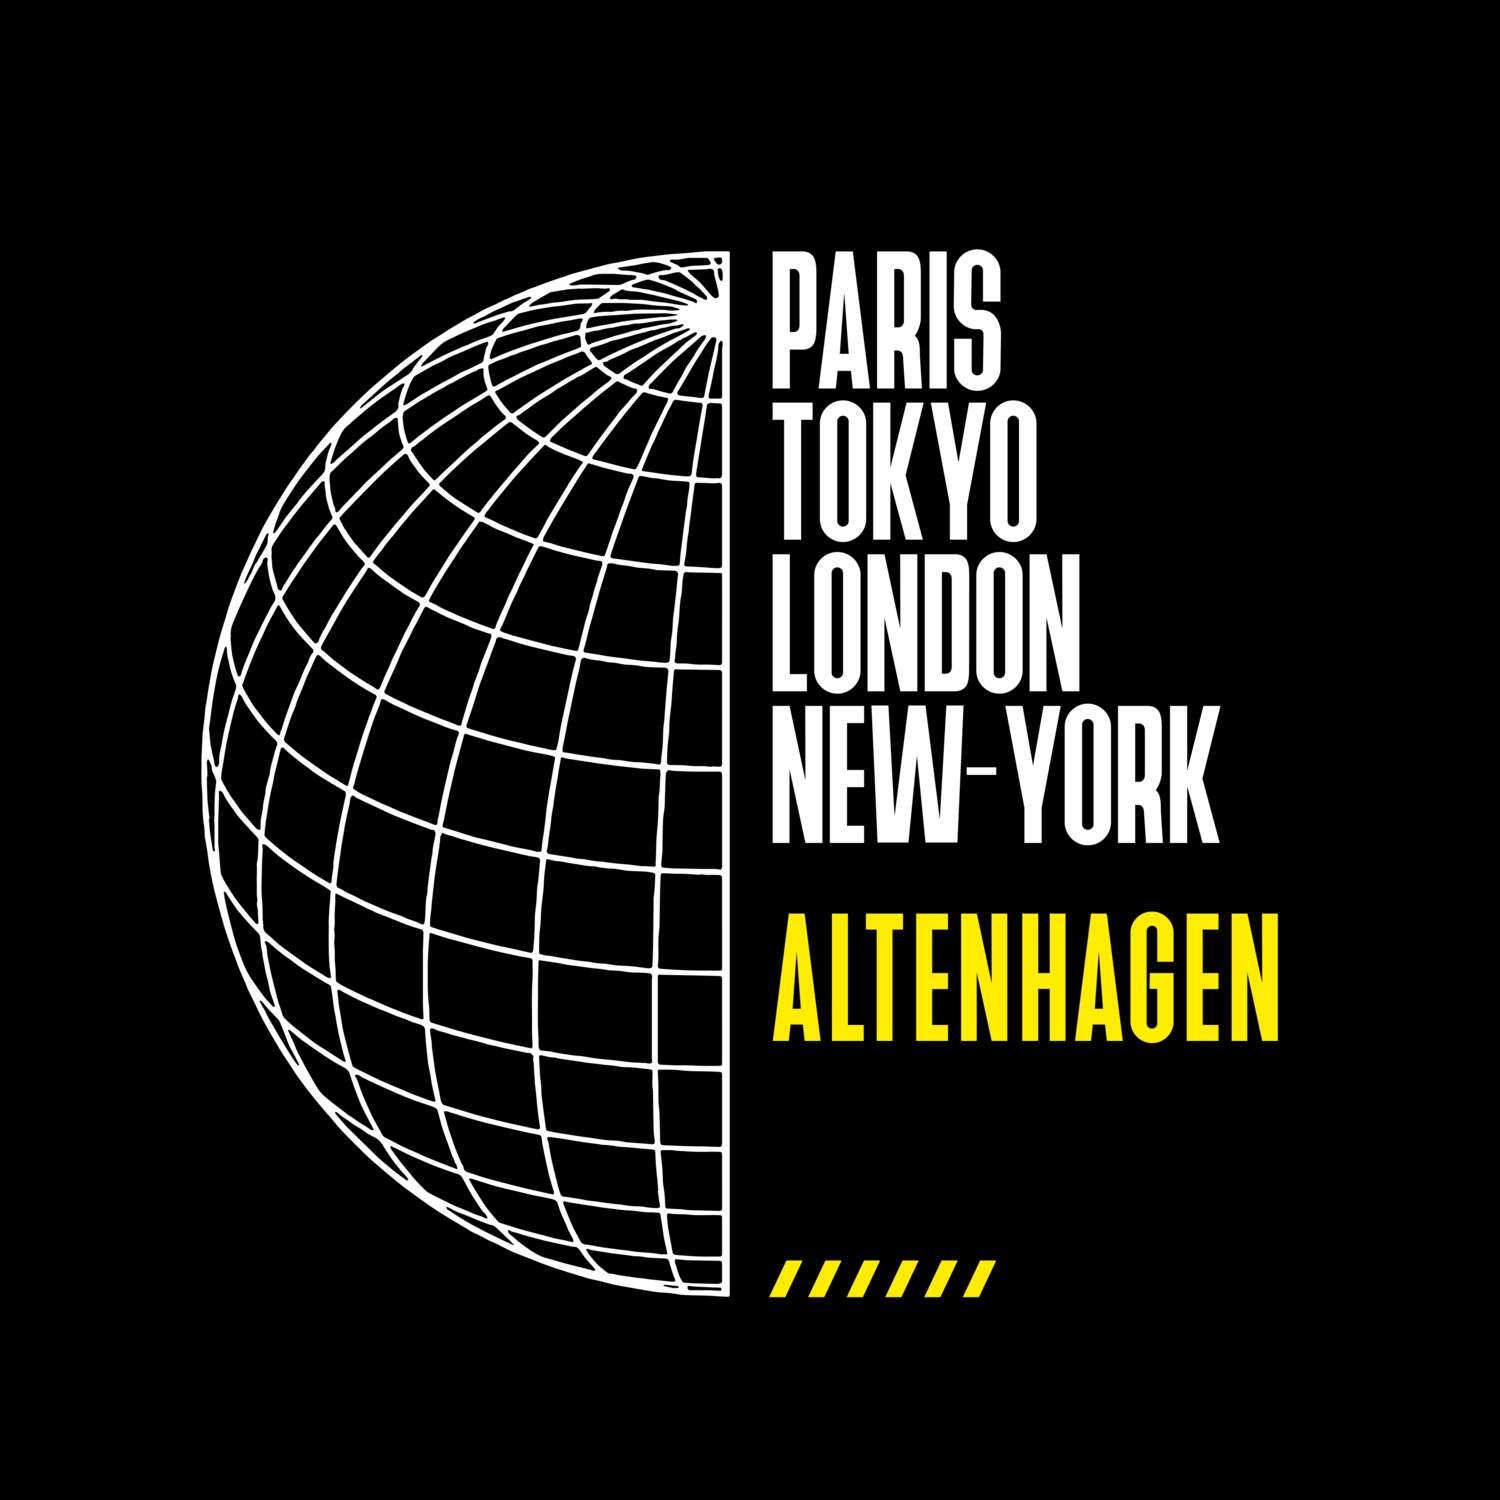 Altenhagen T-Shirt »Paris Tokyo London«